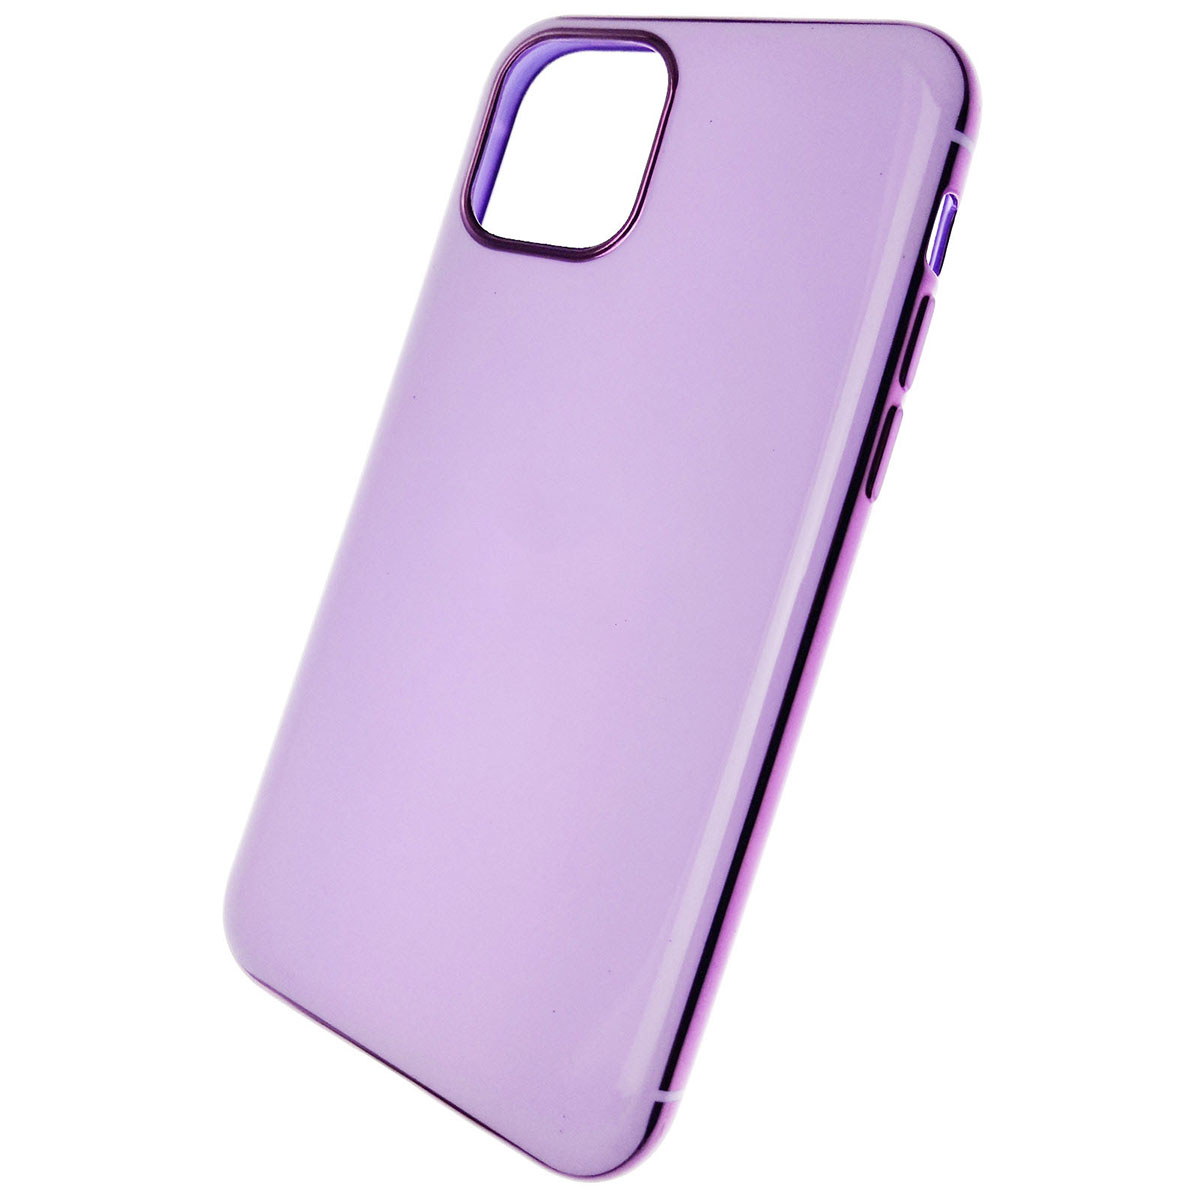 Чехол накладка для APPLE iPhone 11 Pro 2019, силикон, глянец, цвет сиреневый.